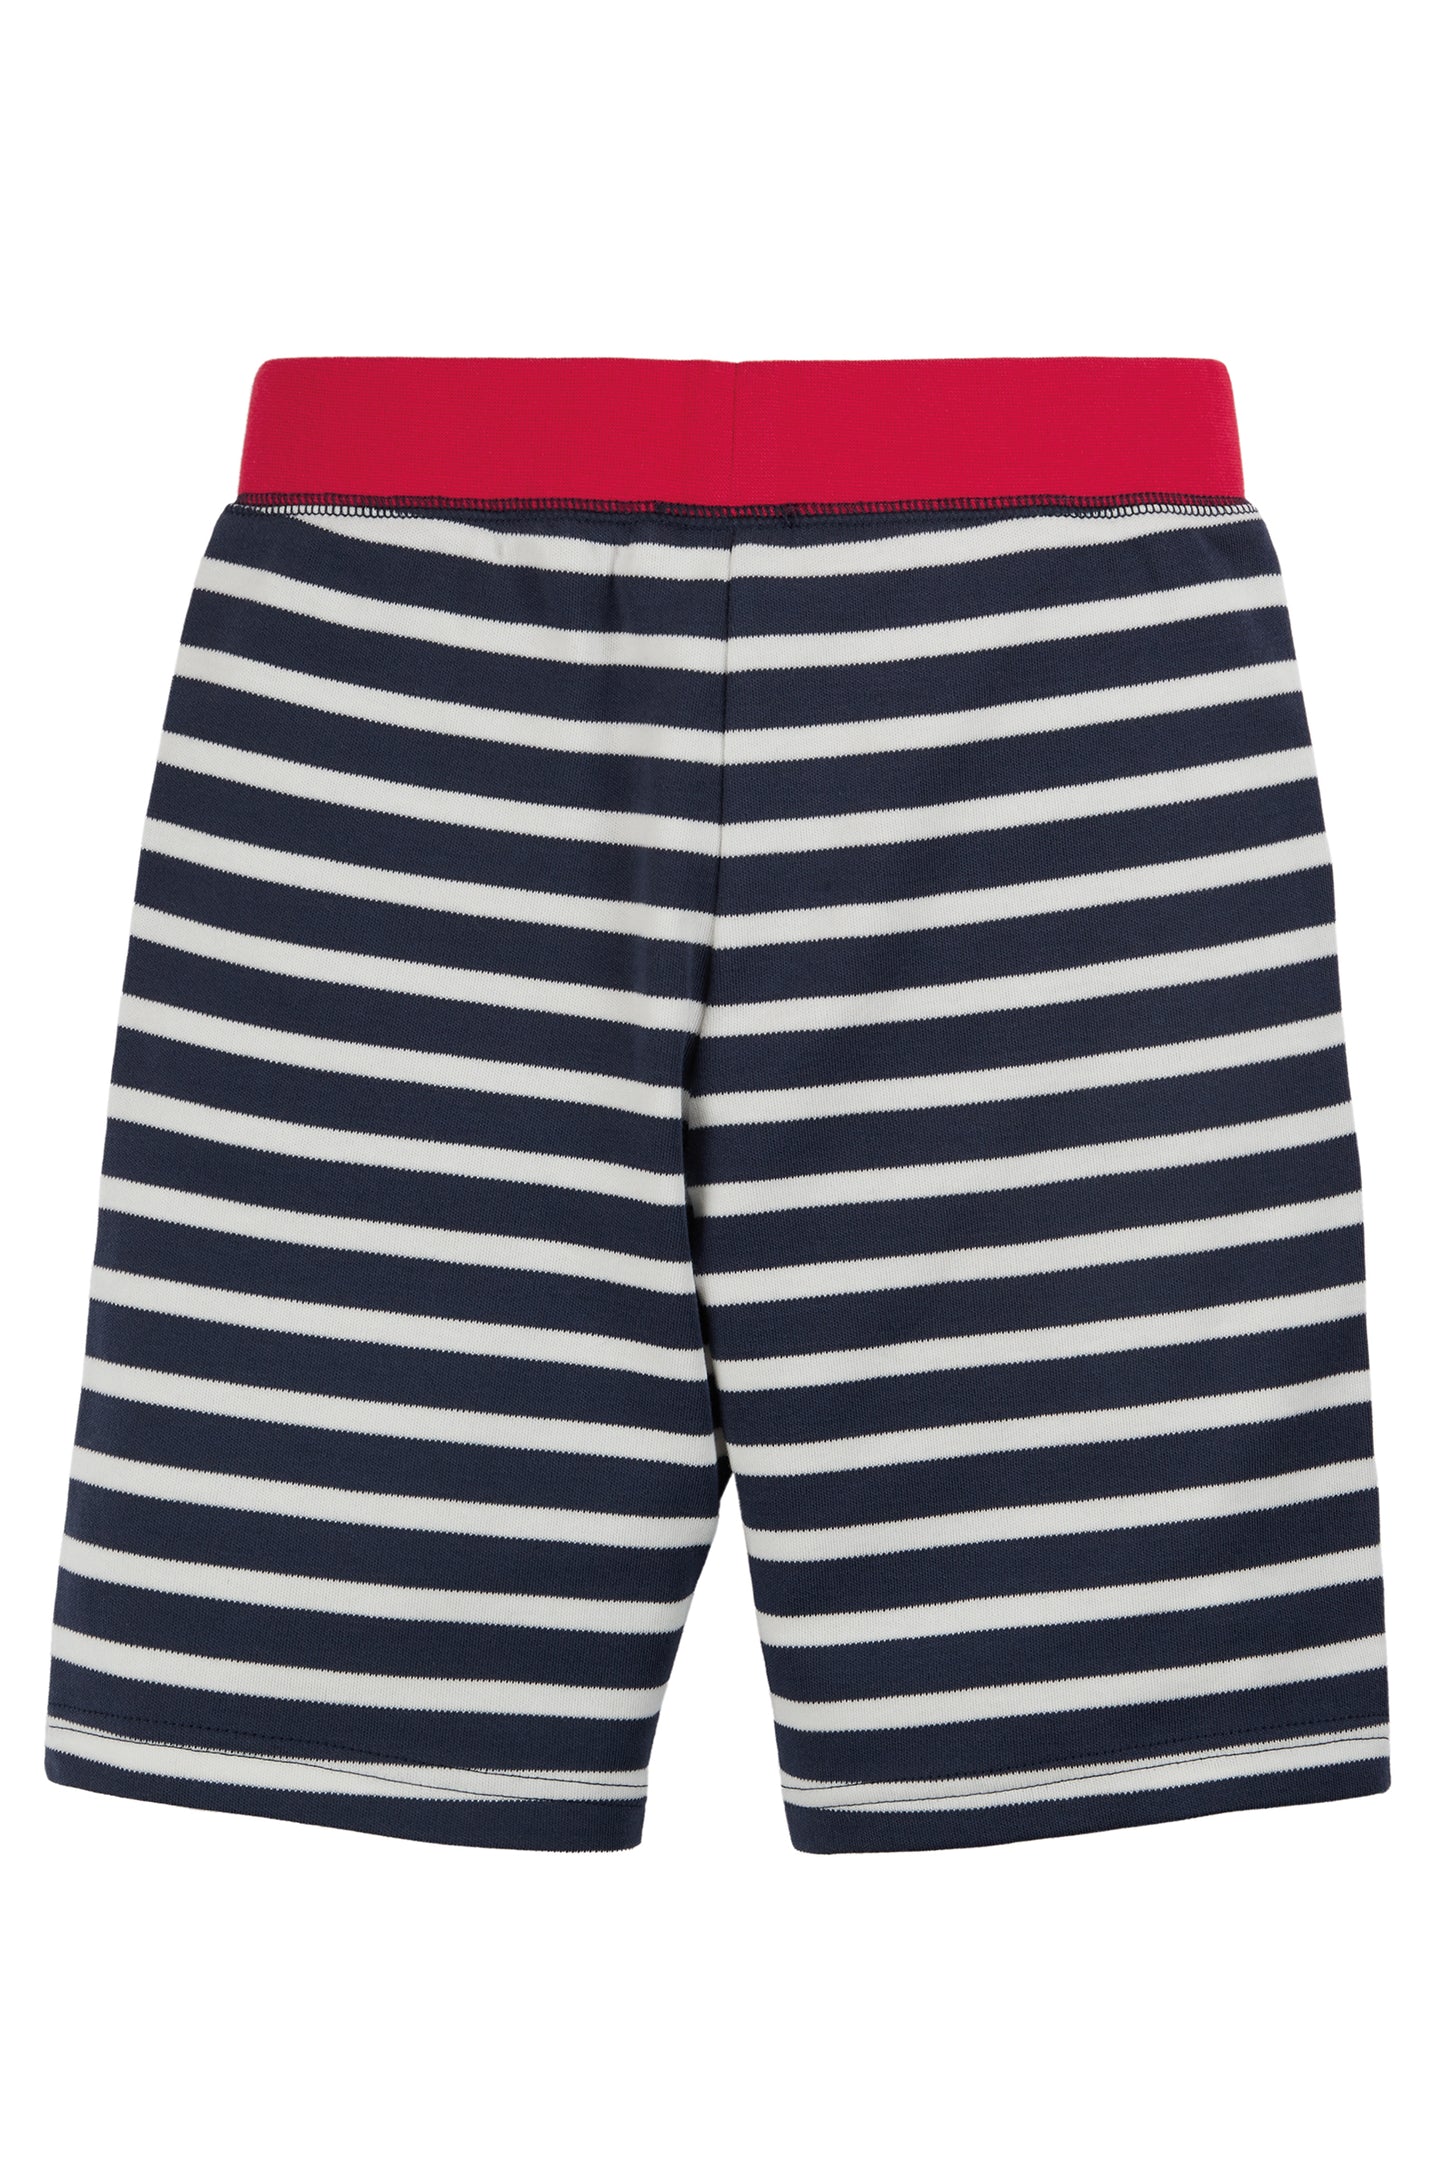 Frugi Favourite Indigo & White Stripe Shorts